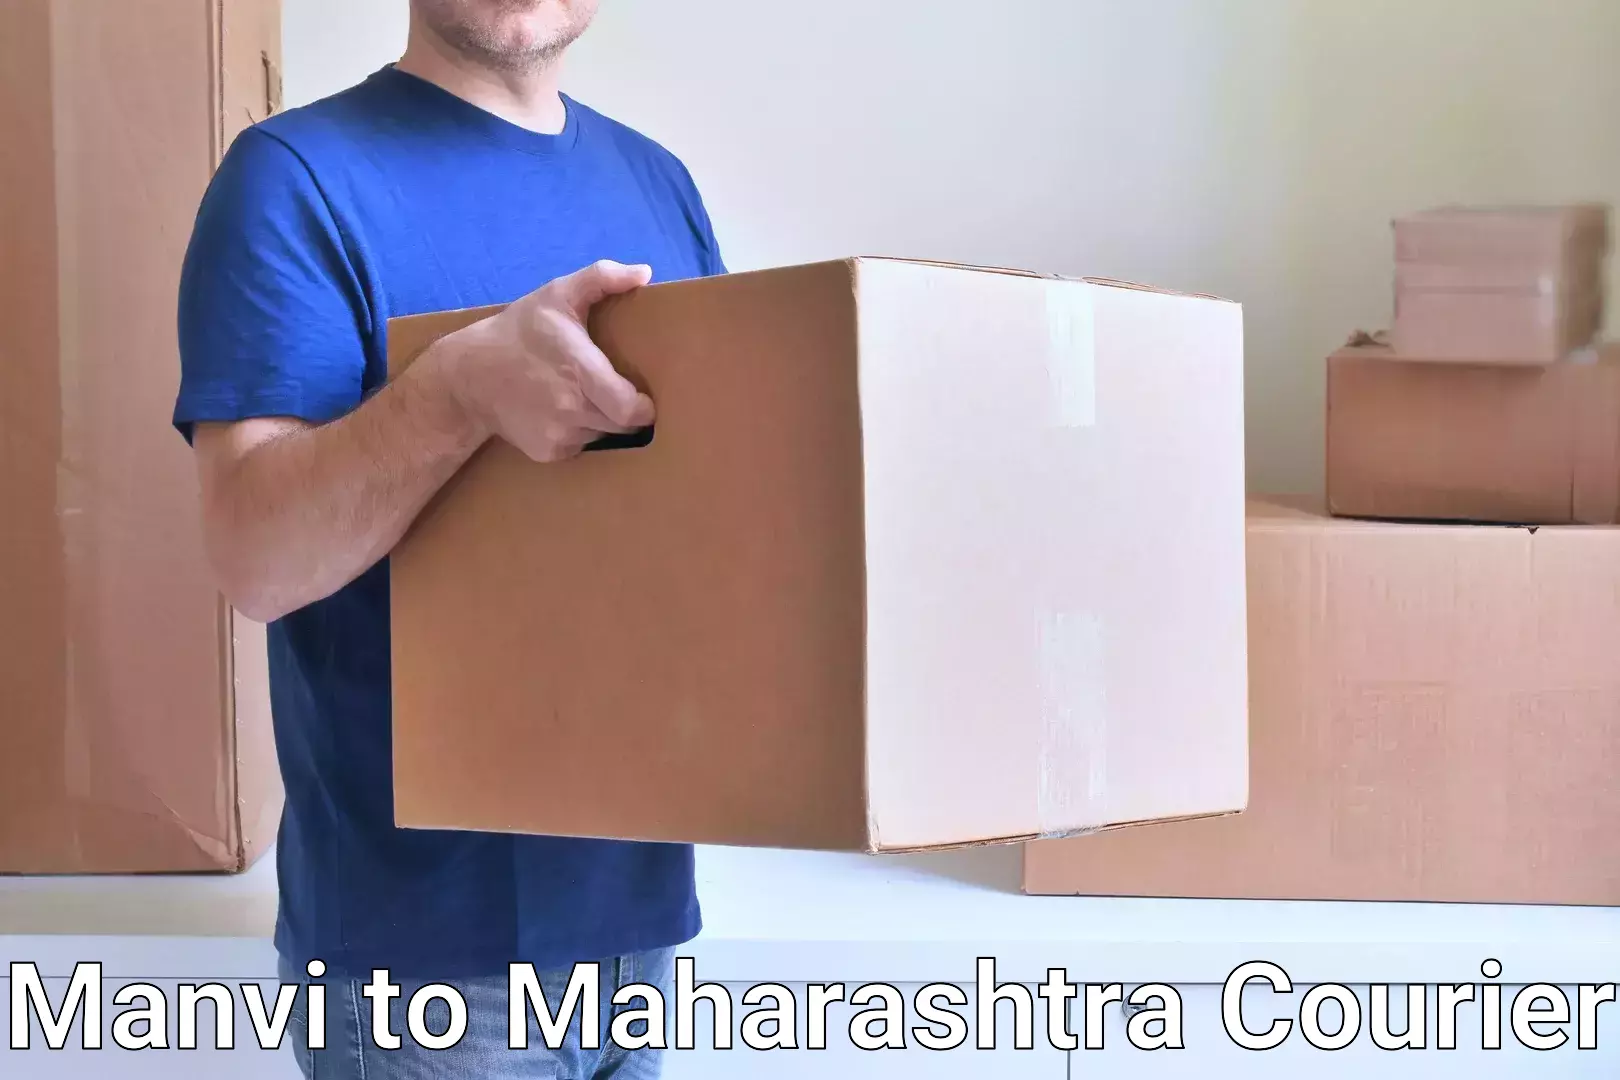 24/7 courier service in Manvi to Pimpri Chinchwad